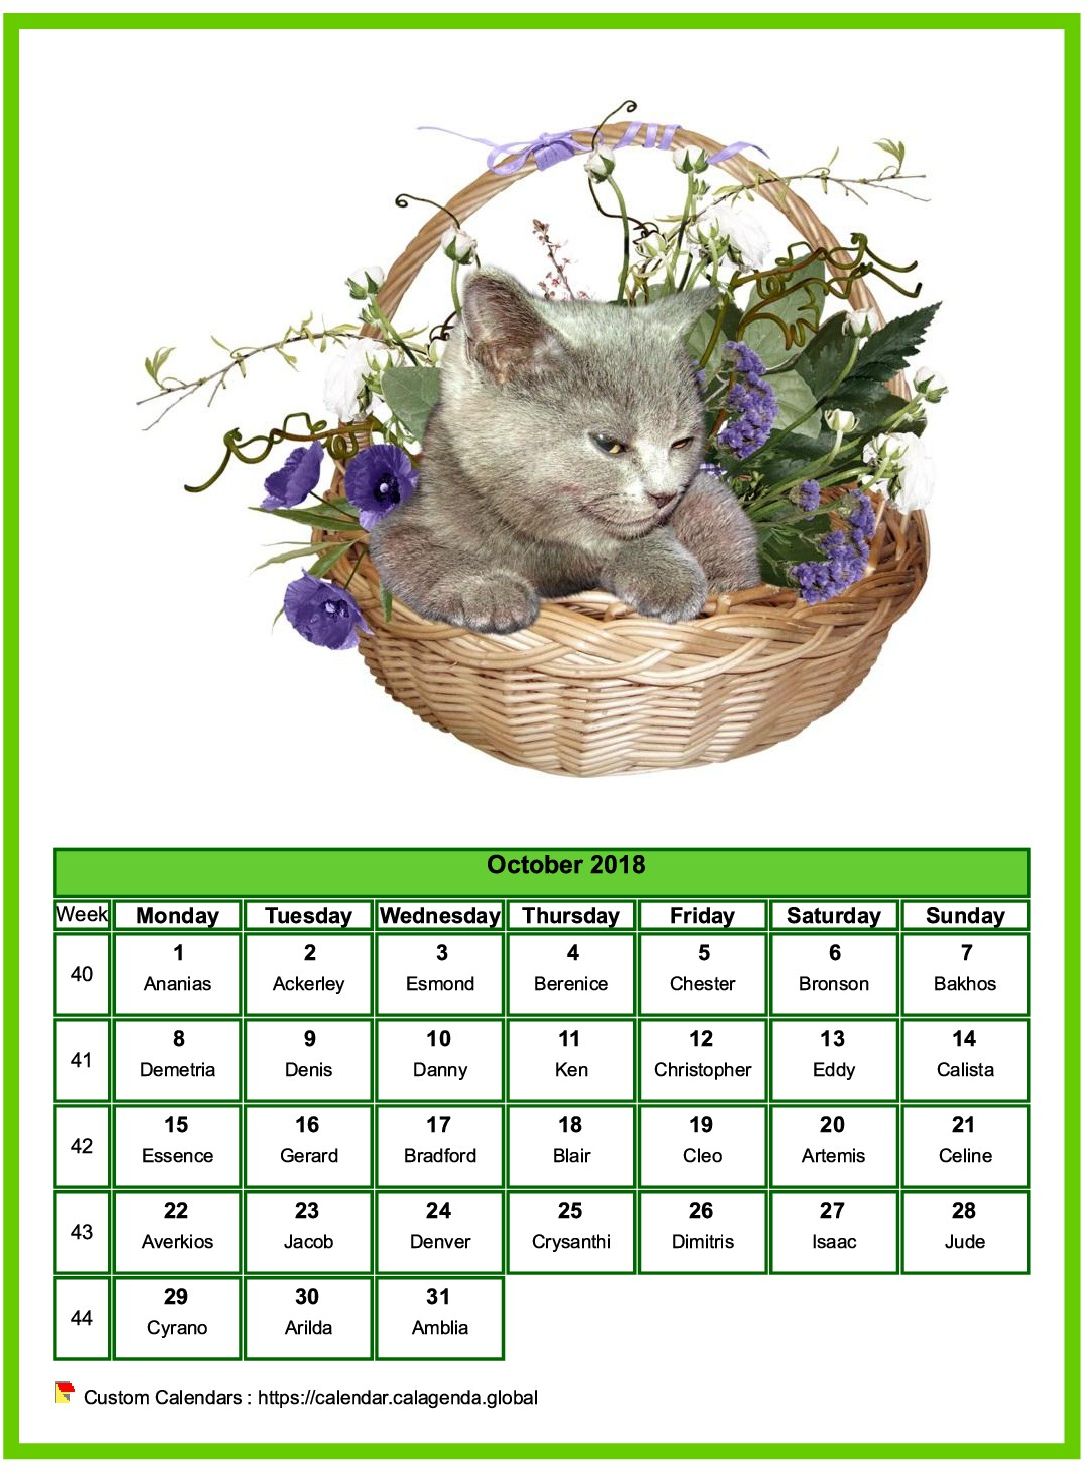 Calendar October 2018 cats